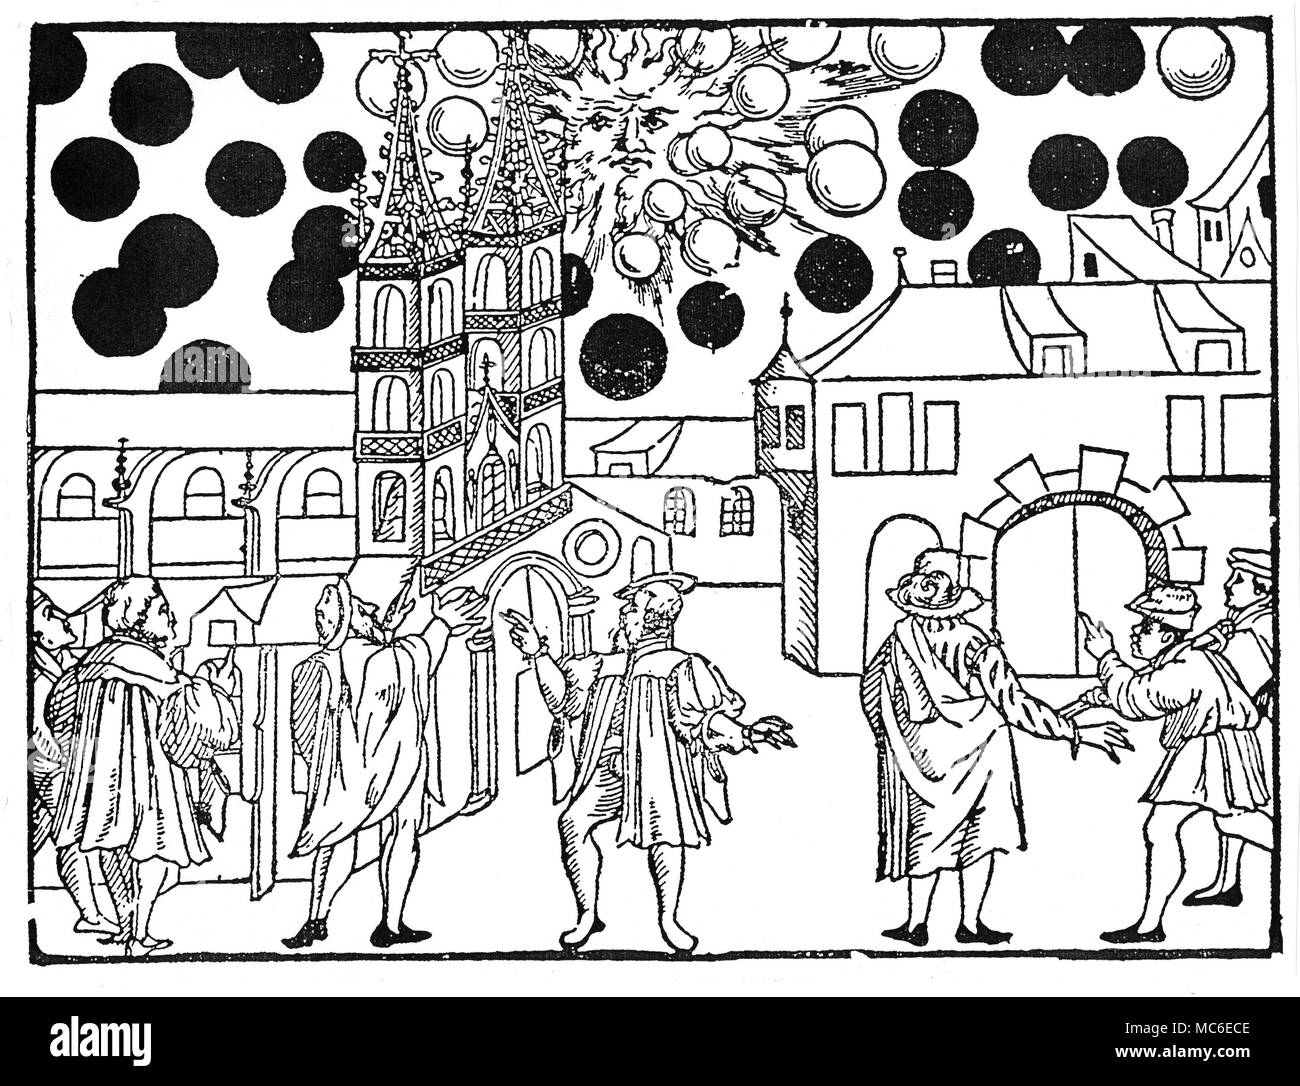 Les OVNI objets volants non identifiés dans le ciel le 7 août 1566 (le mois après la mort de Nostradamus), sur la ville de Bâle, en Suisse. Réimpression lâche, après un journal publié en 1566. Banque D'Images